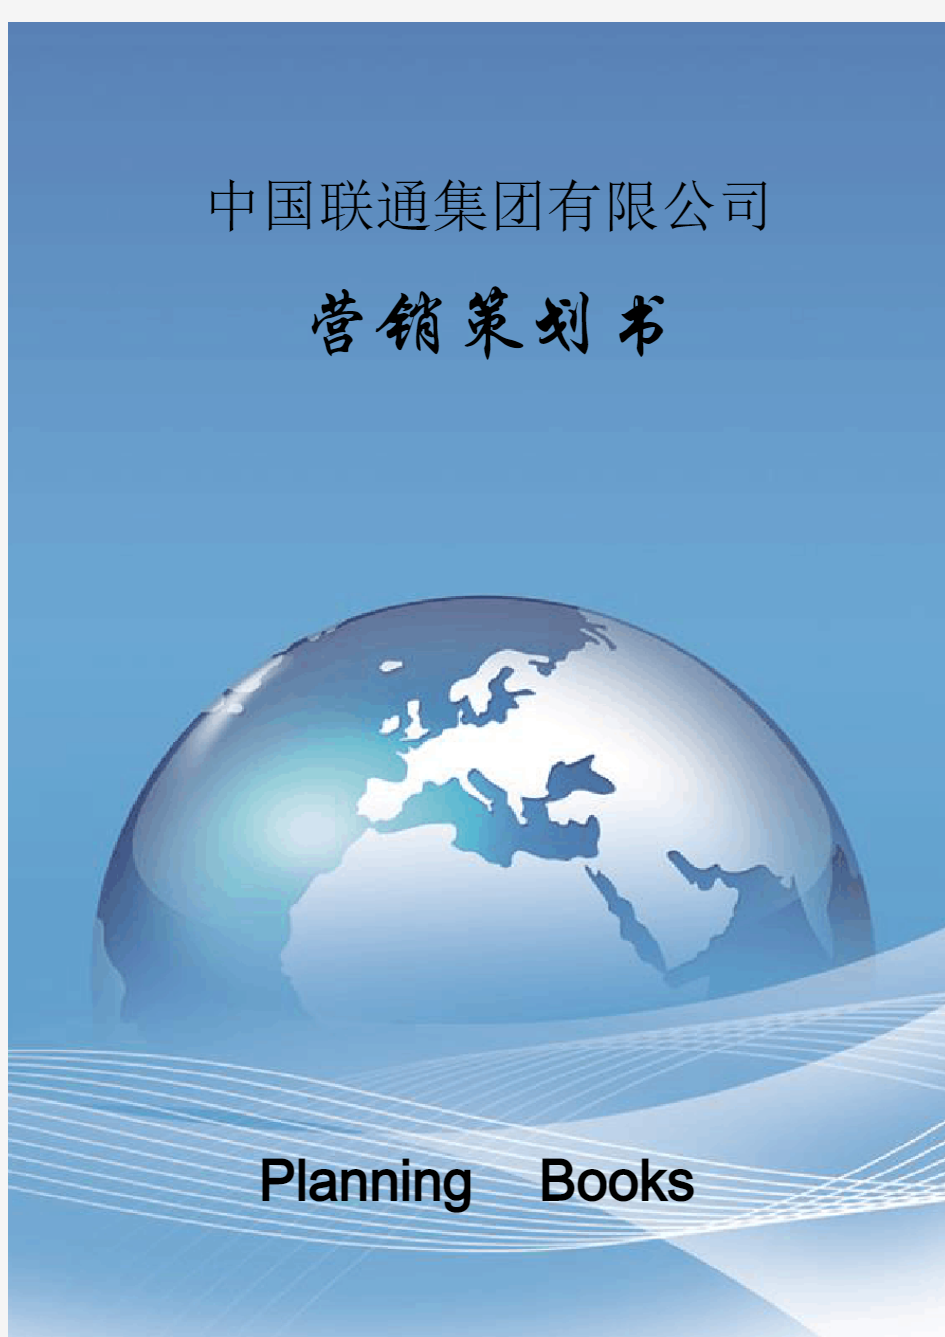 中国联通集团公司营销策划方案